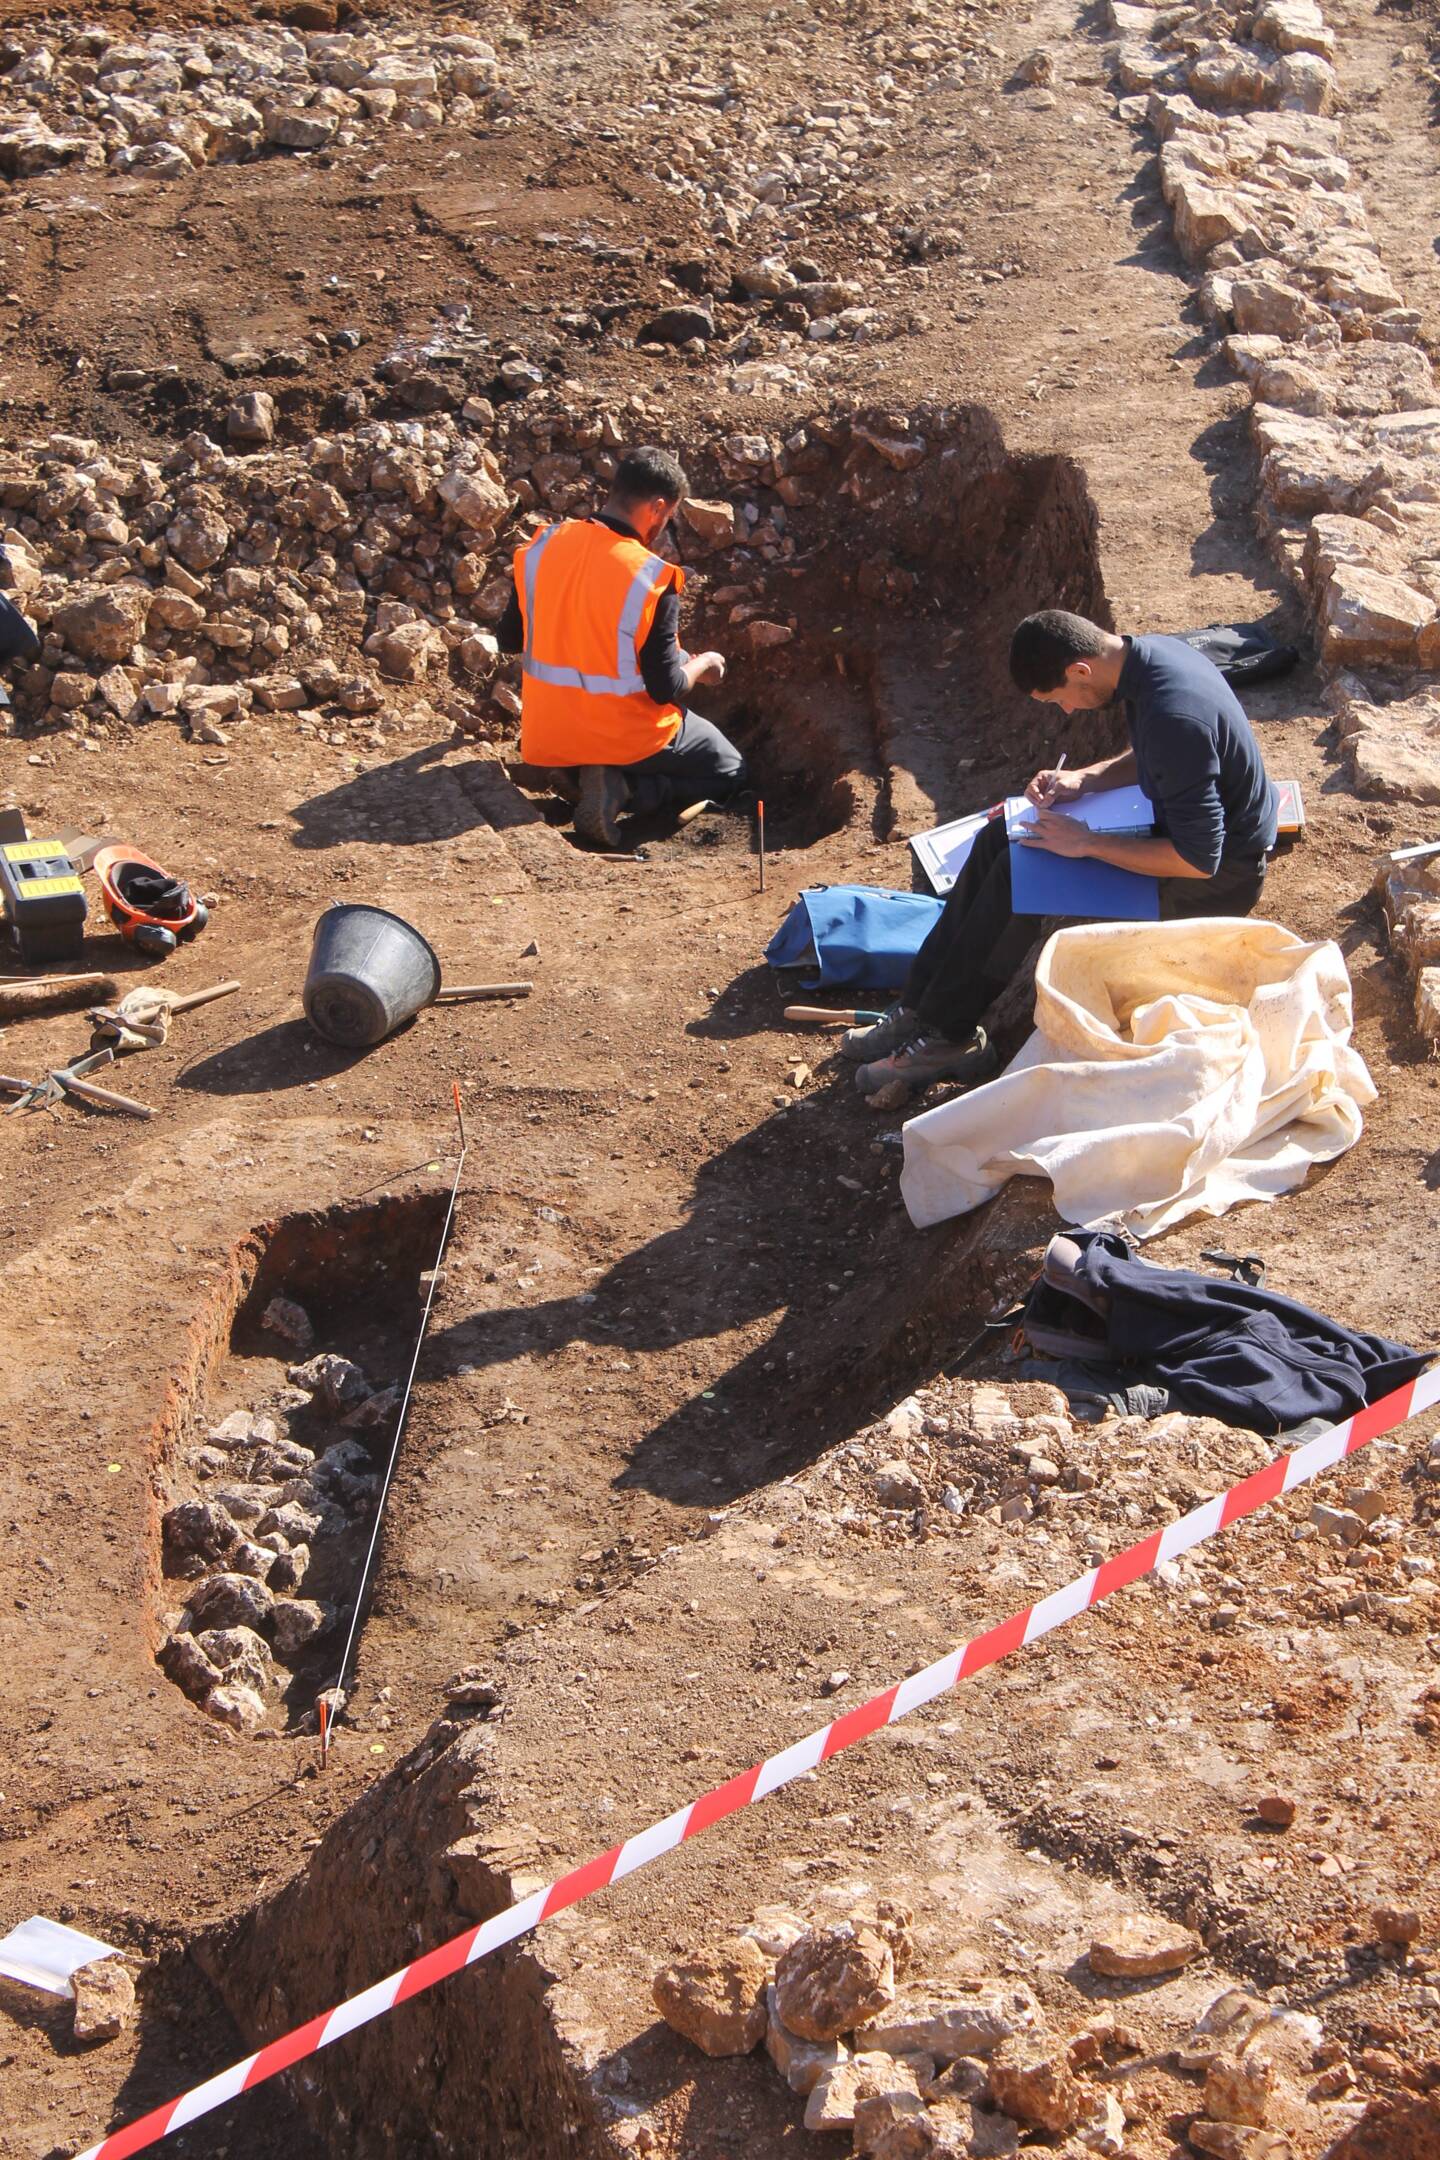 Les travaux d’archéologie ont débuté en urgence après le début du chantier de construction d’un centre commercial, sur le site duquel on a découvert des vestiges enfouis.